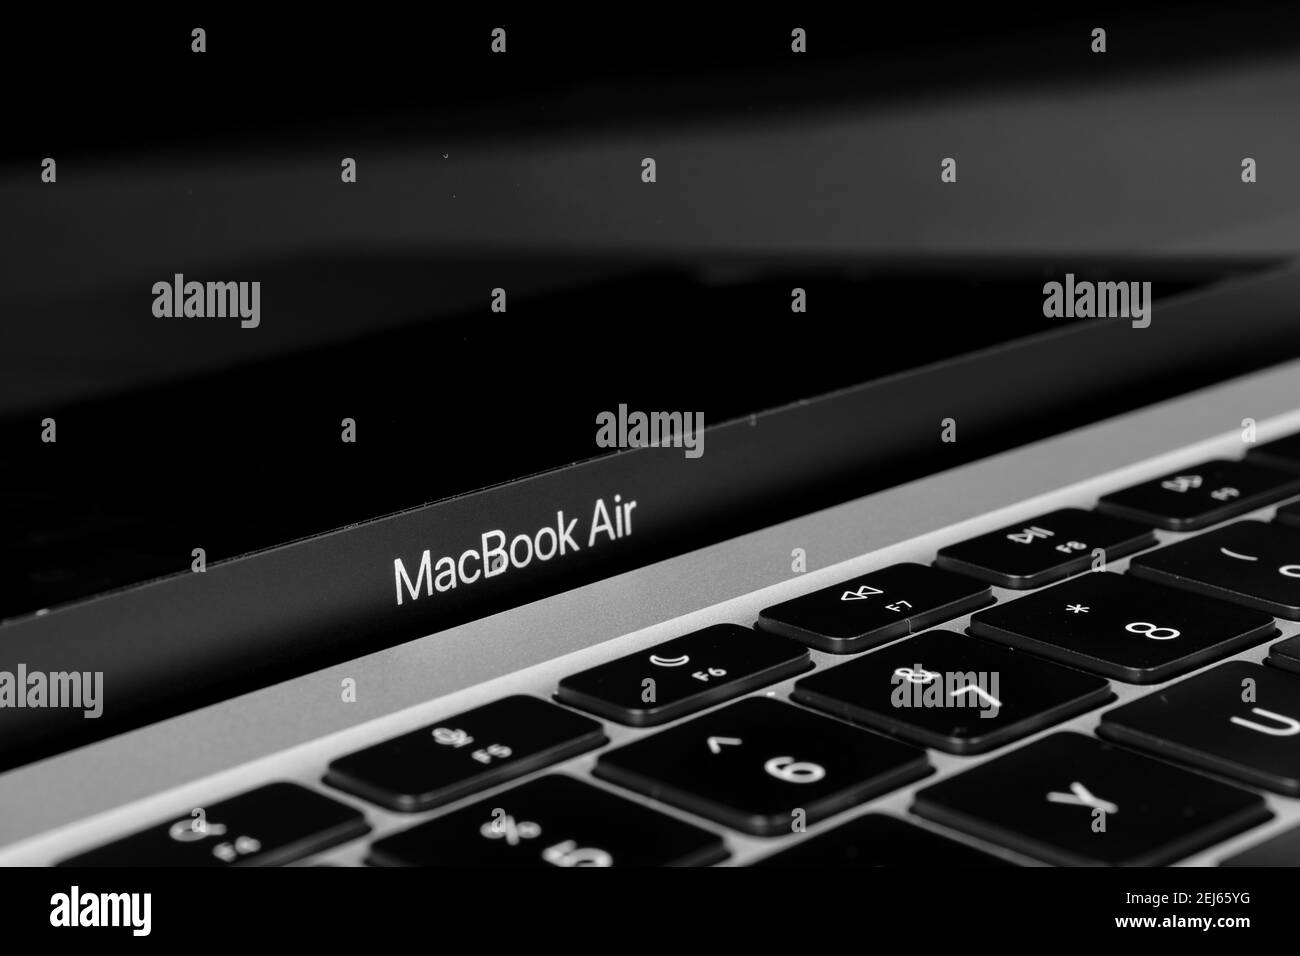 Ordinateur portable Apple MacBook Air M1 et son logo. Photo en noir et blanc. Stafford, Royaume-Uni, 21 février 2021. Banque D'Images